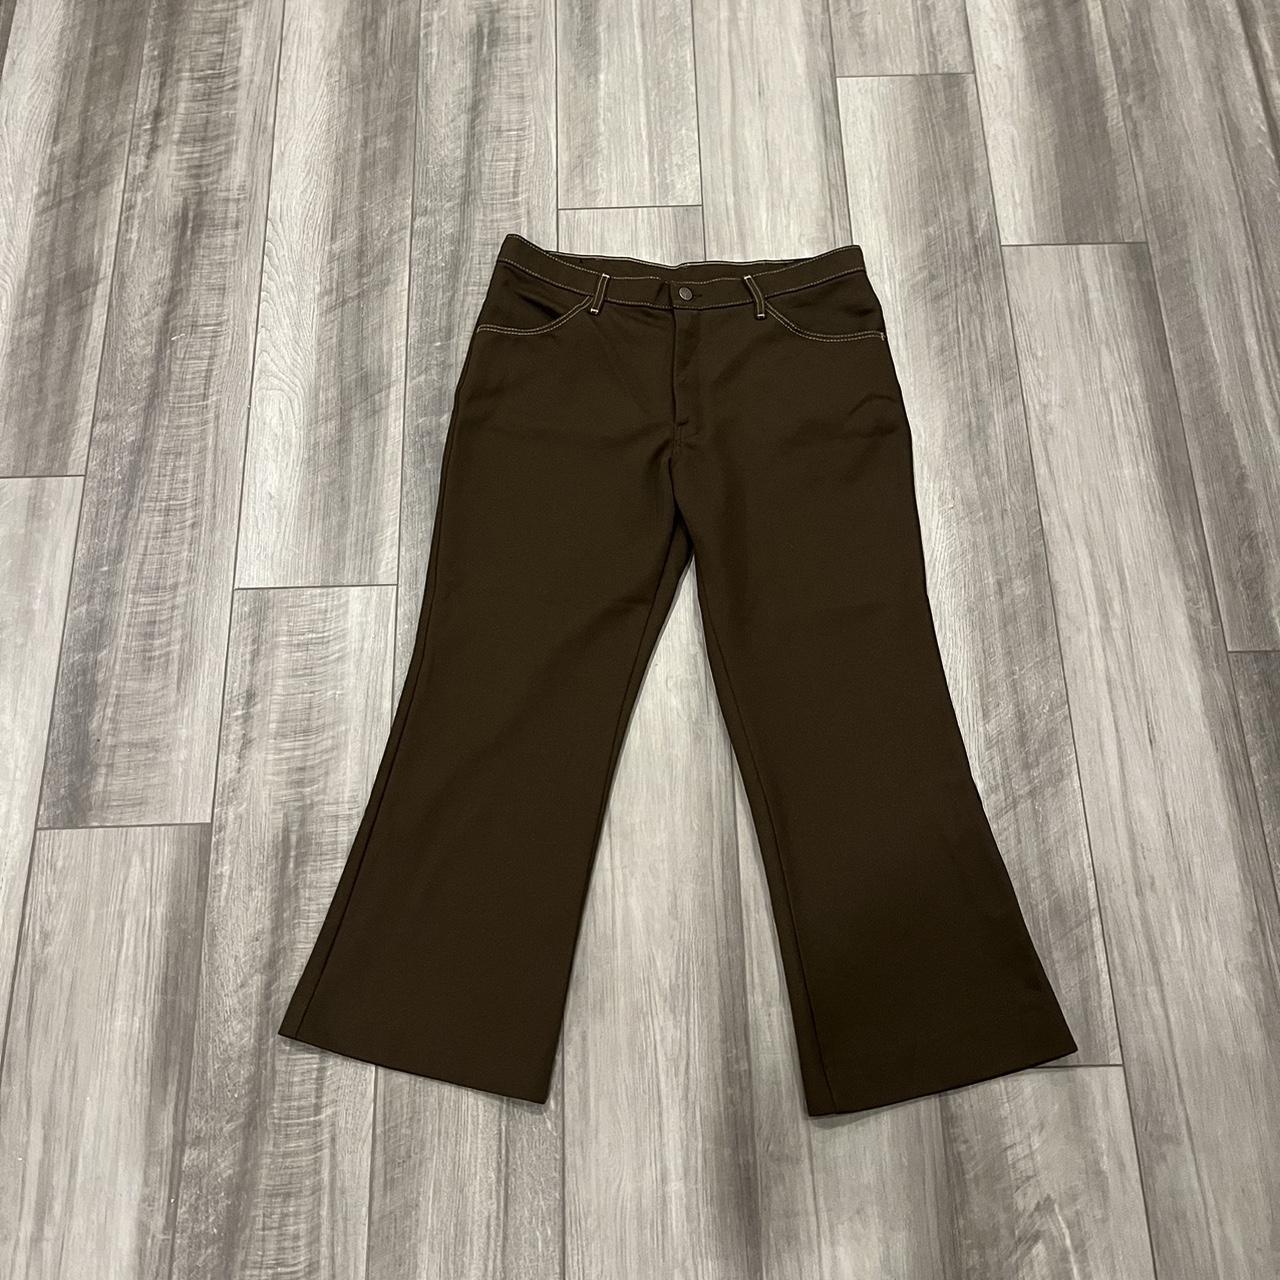 Farah Men's Brown Trousers